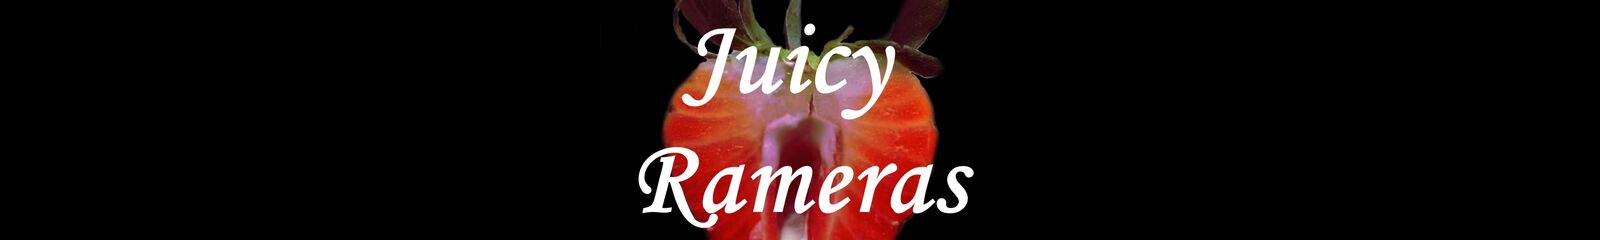 Juicy Rameras